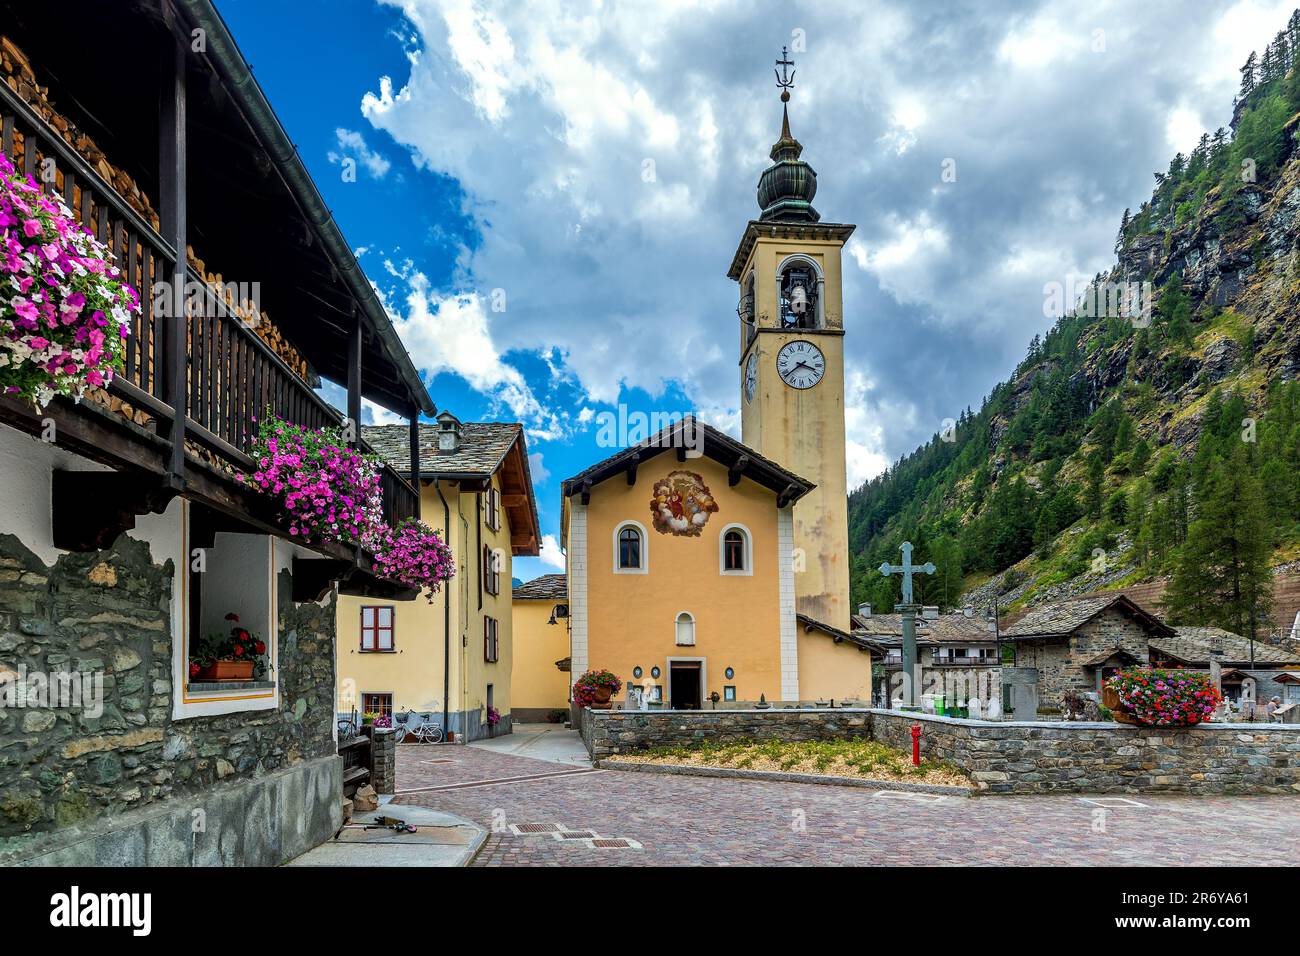 Iglesia con reloj grande en el campanario y casas decoradas con flores en la pequeña ciudad alpina de Gressoney la Trinite en Italia. Foto de stock